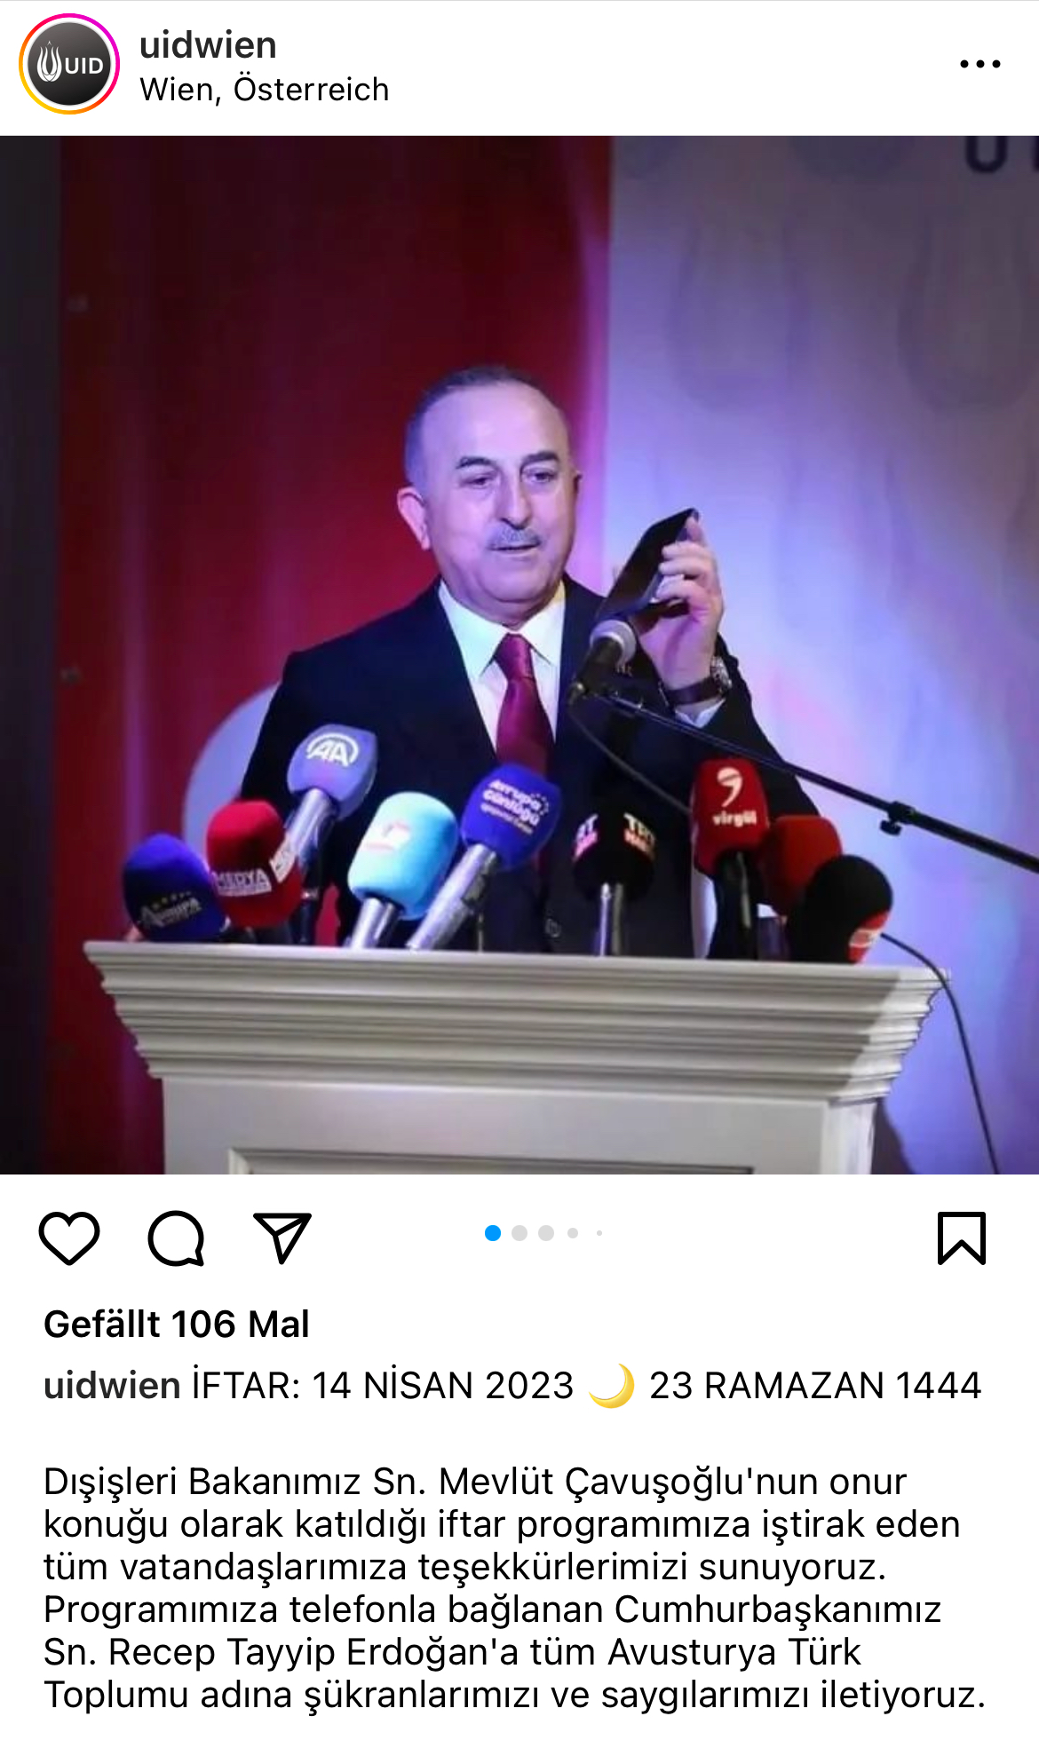 Çavuşoglu überträgt das Grußwort Erdogans bei der UID-Veranstaltung